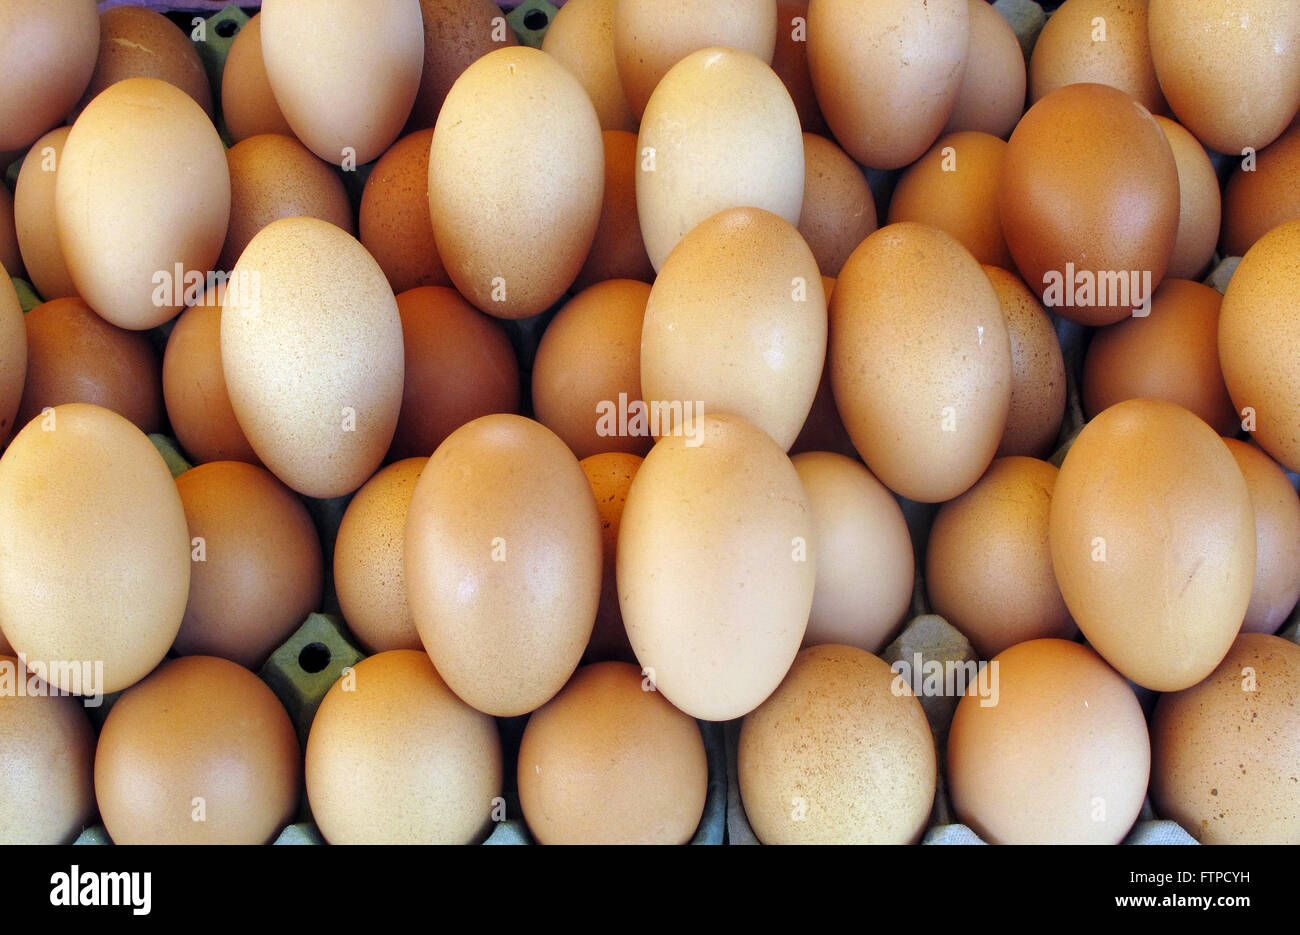 Huevos de gallina vendidos en el Pacaembu justo en la Plaza Charles Miller Foto de stock